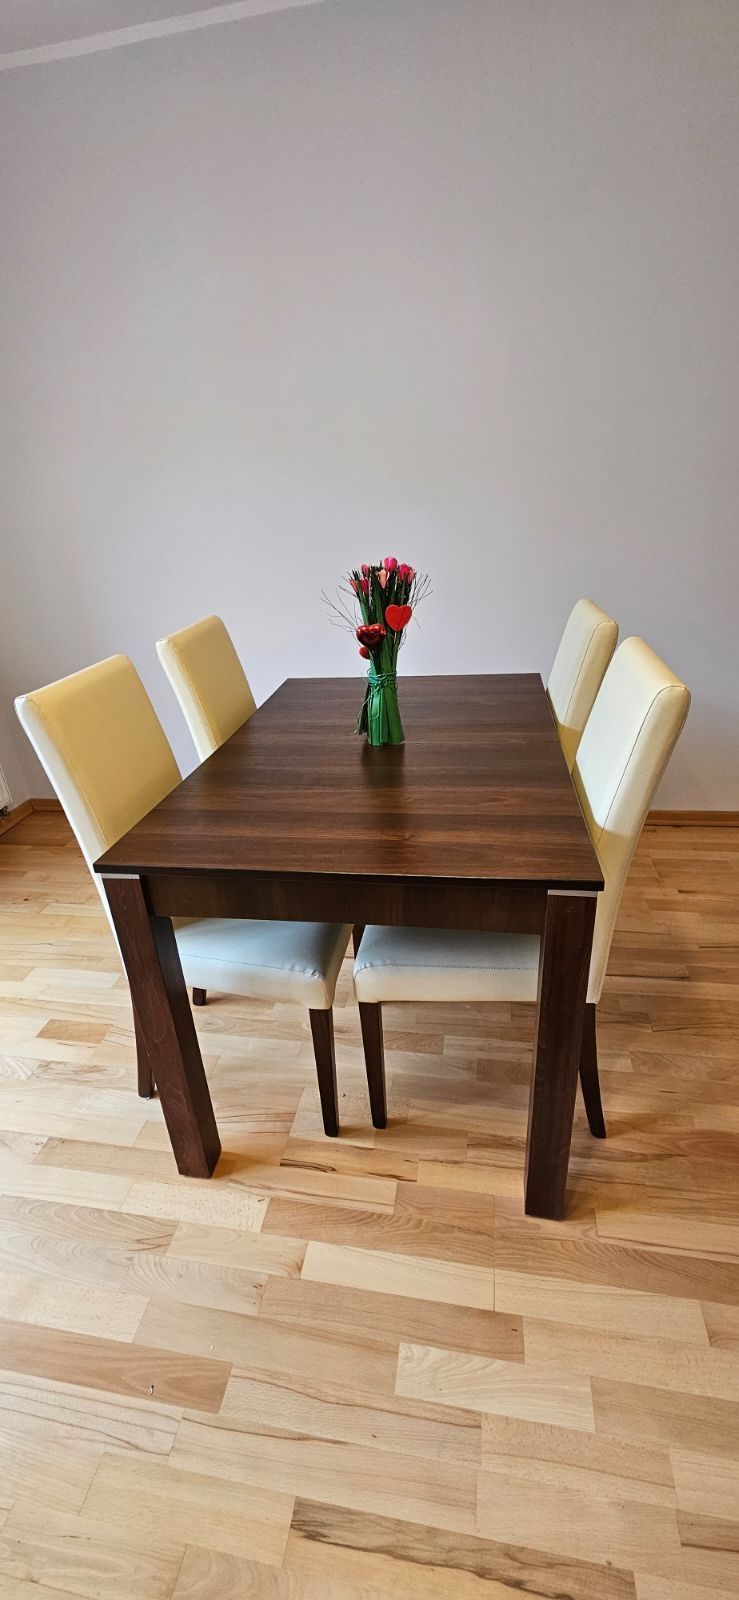 Stół z krzesłami. Idealny do jadalni, kuchni